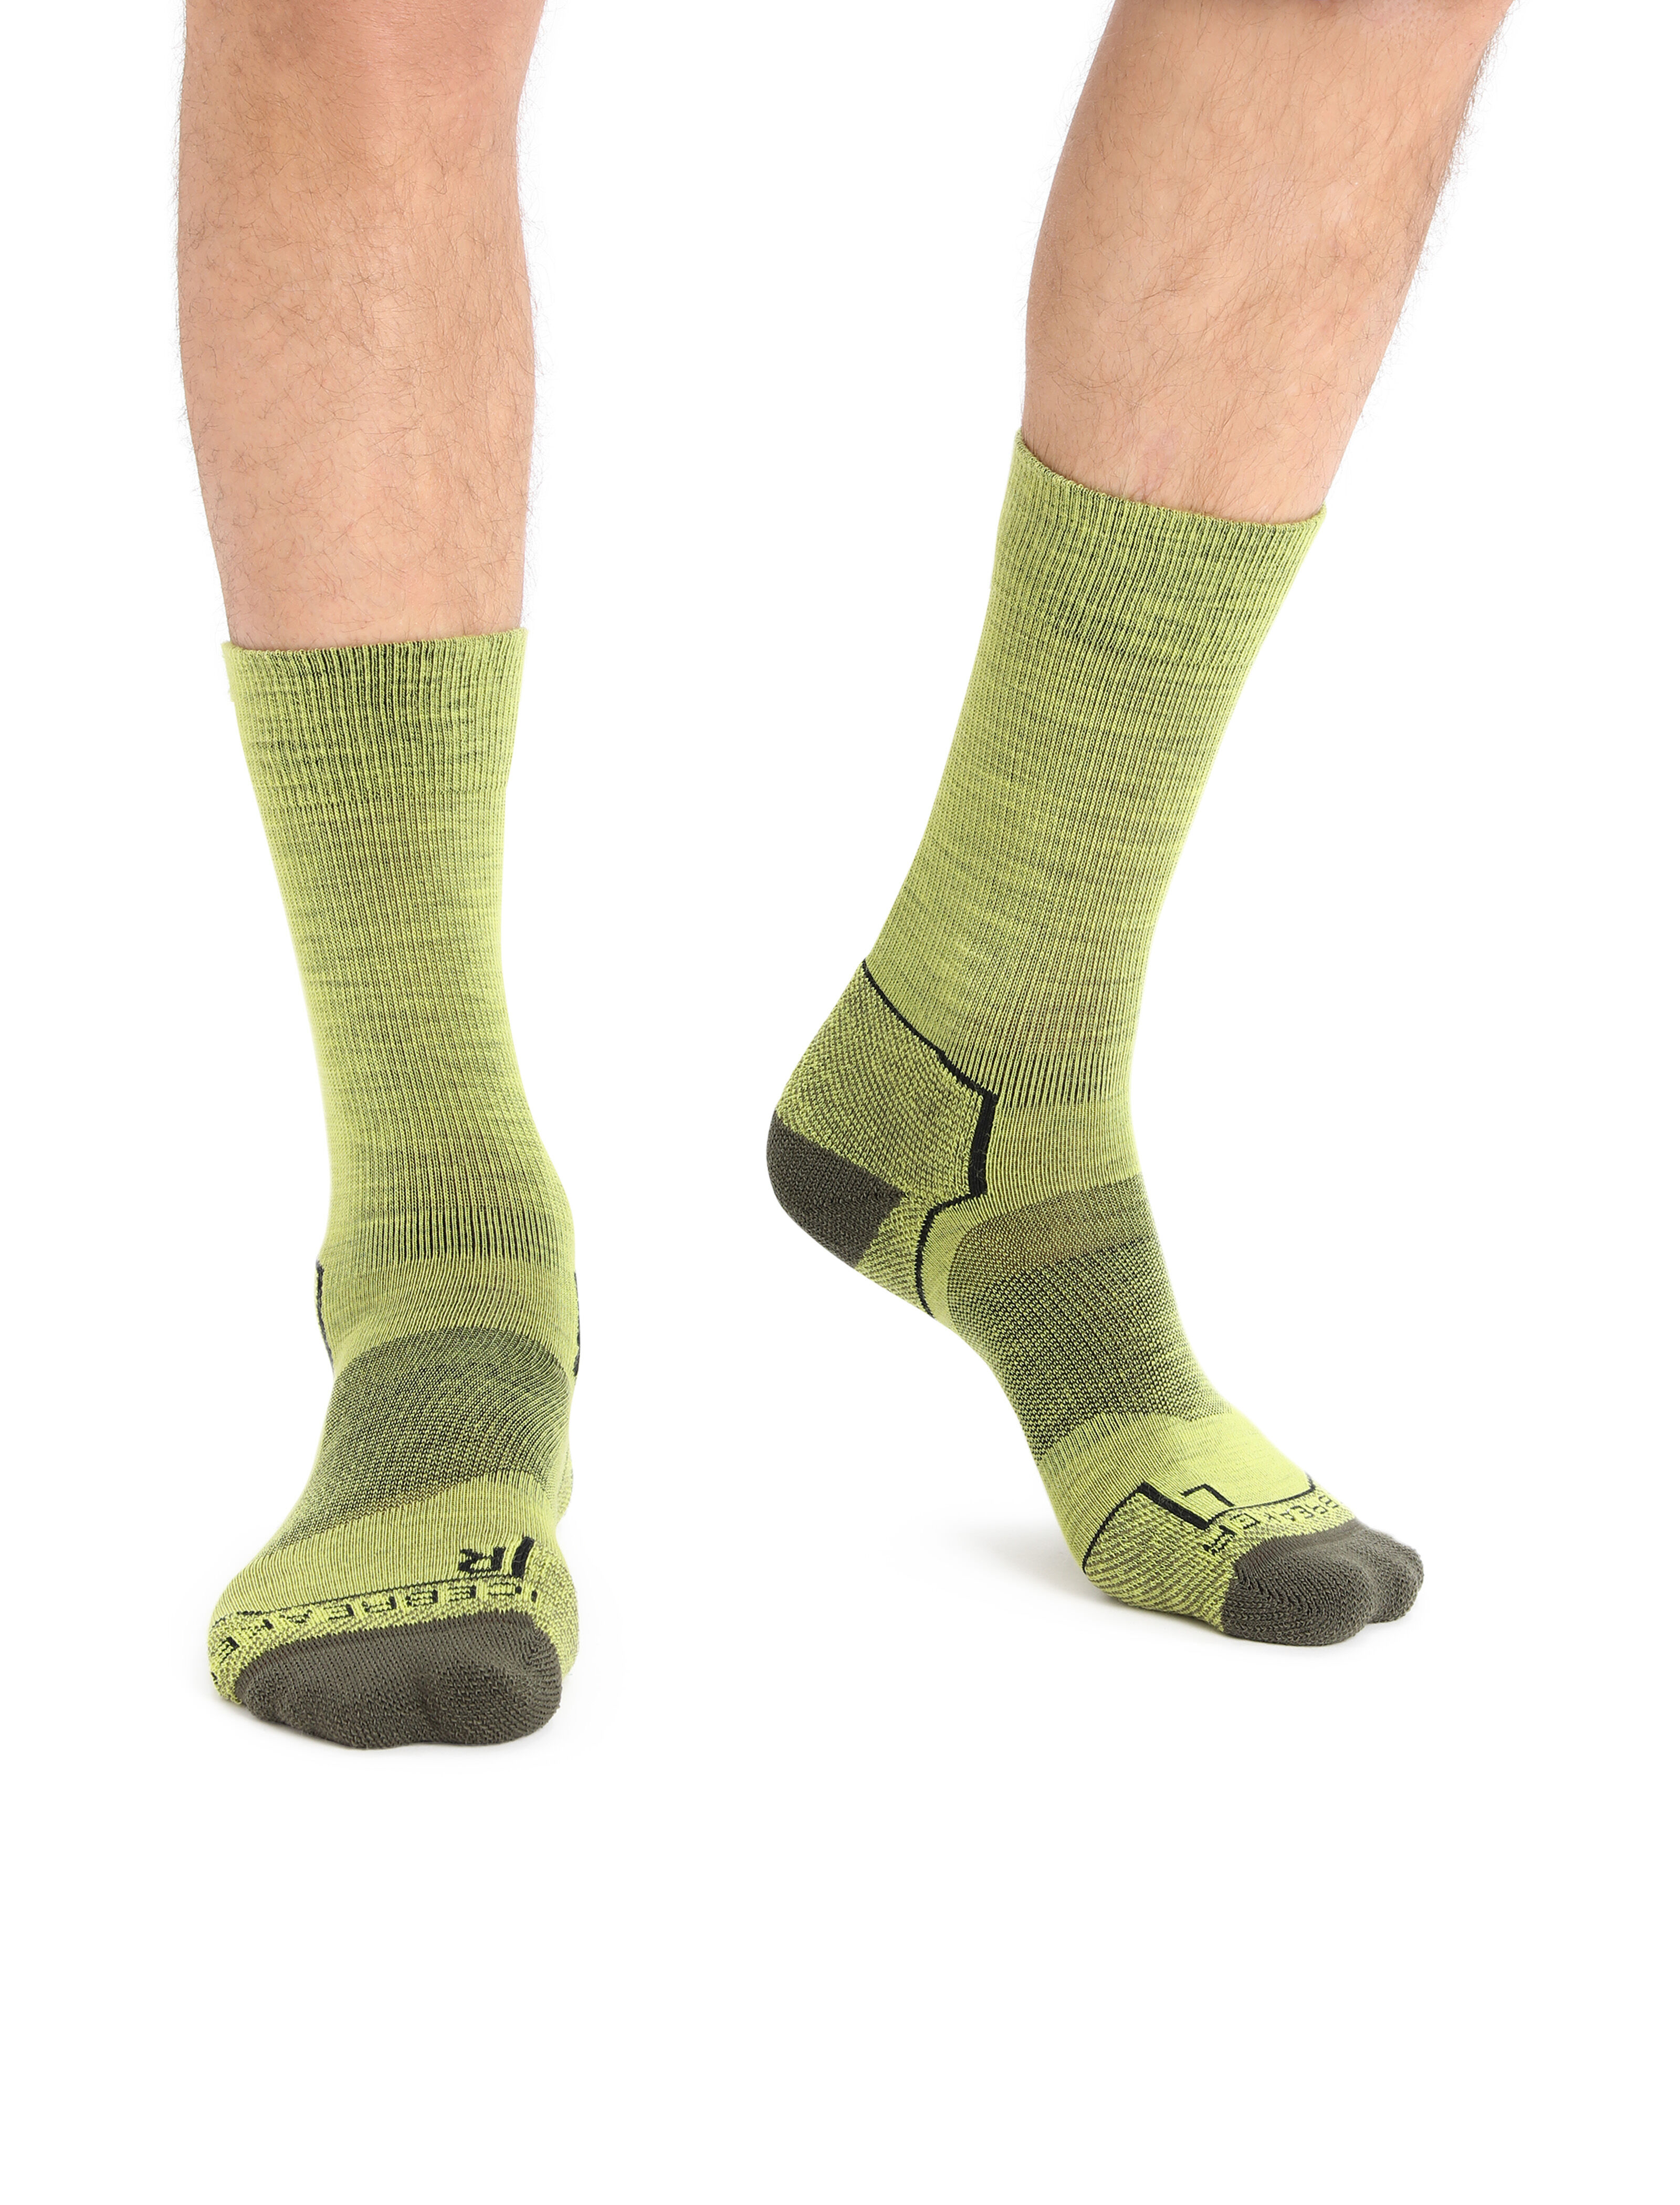 Zonent Merino Wool Socks Hiking Socks Ankle Athletic Crew Socks Running Socks 